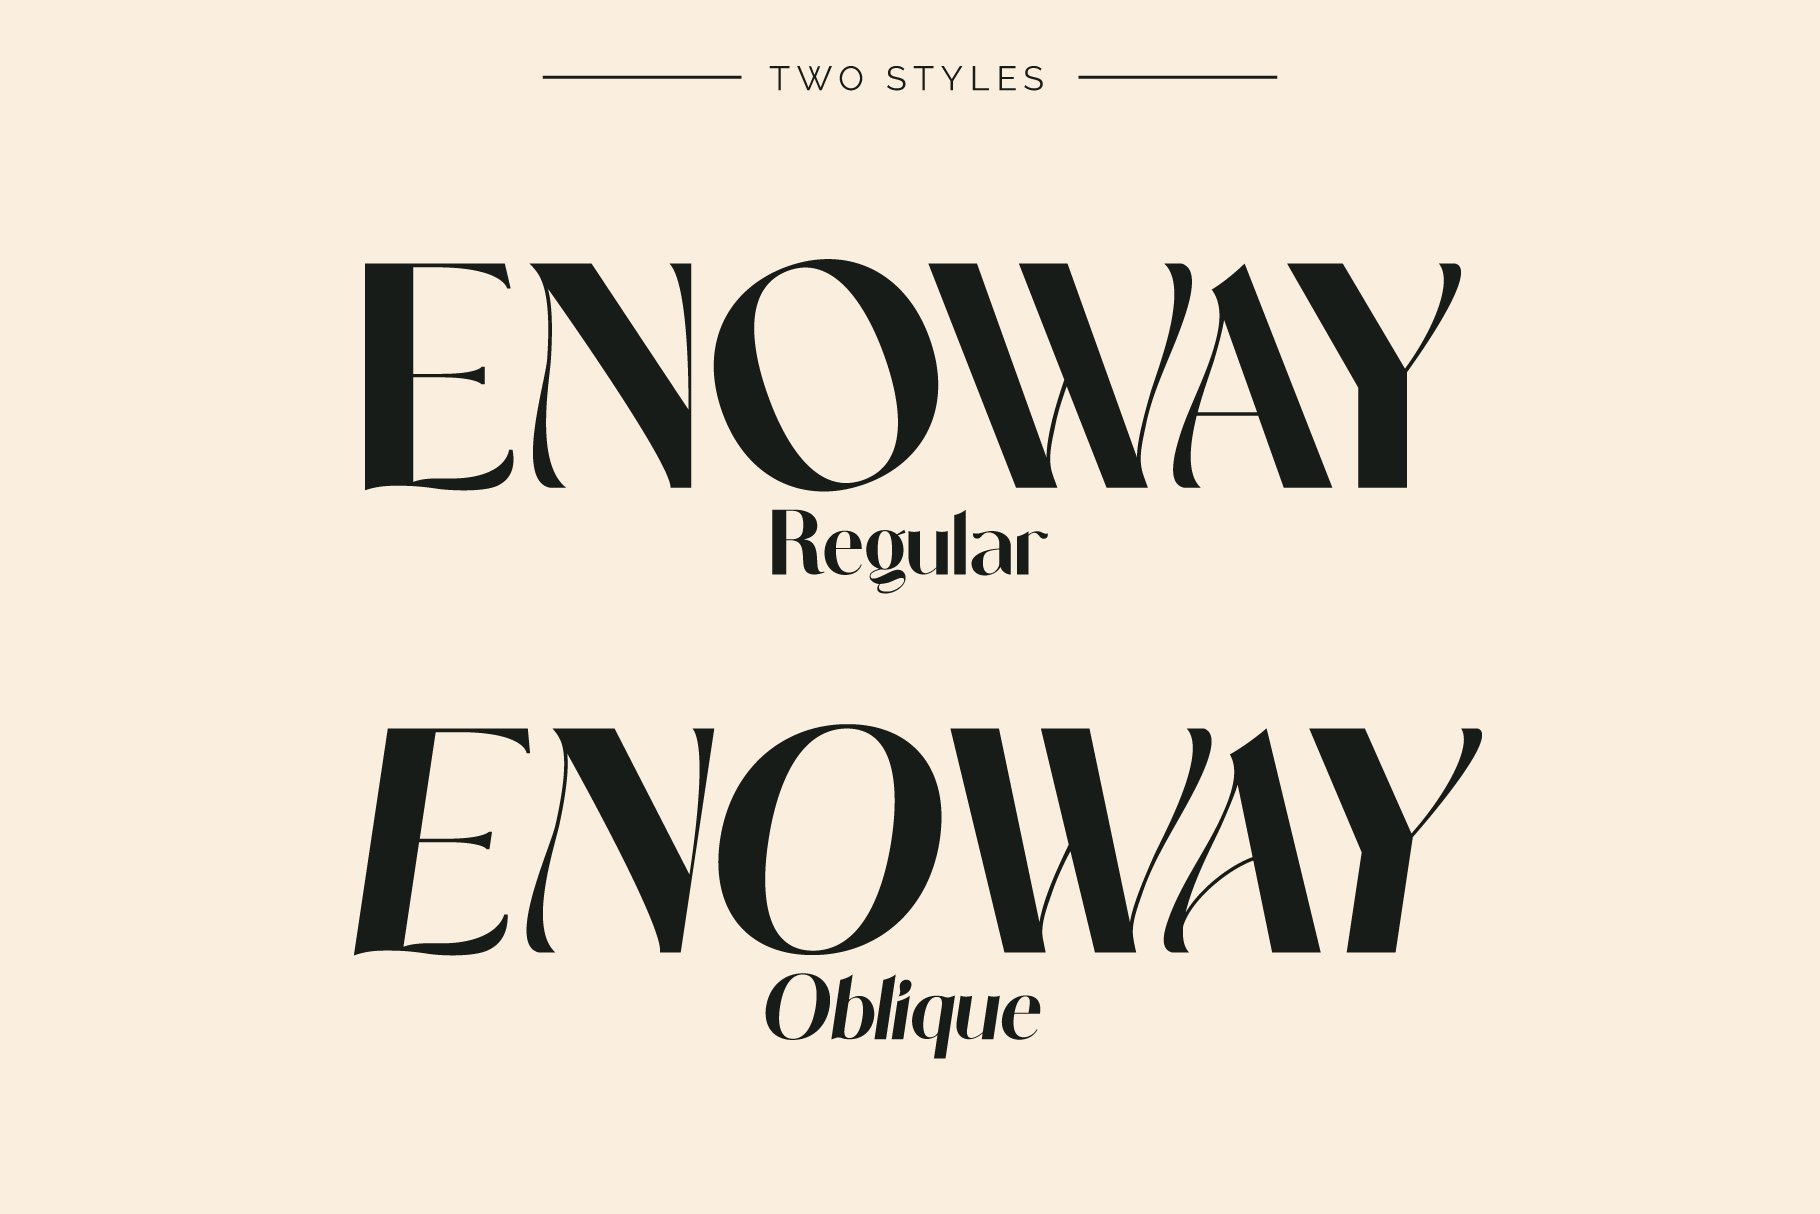 Enoway - Art Nouveau Typeface preview image.